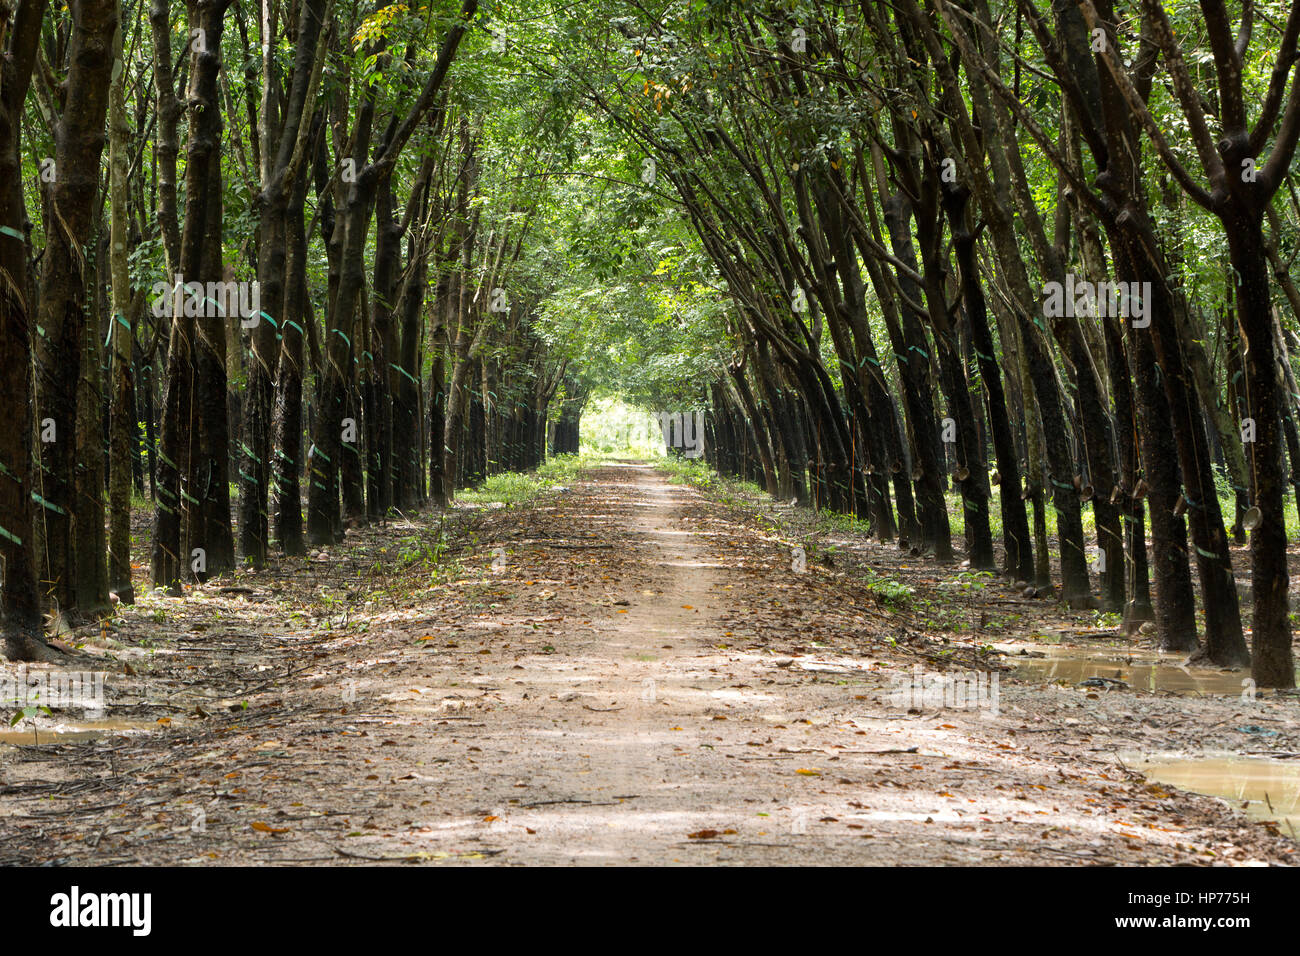 Para la piantagione di alberi 'Hevea Brasiliensis' , dando un effetto della cattedrale, convergenti treeline & carreggiata, ombra con luce solare filtrata. Foto Stock